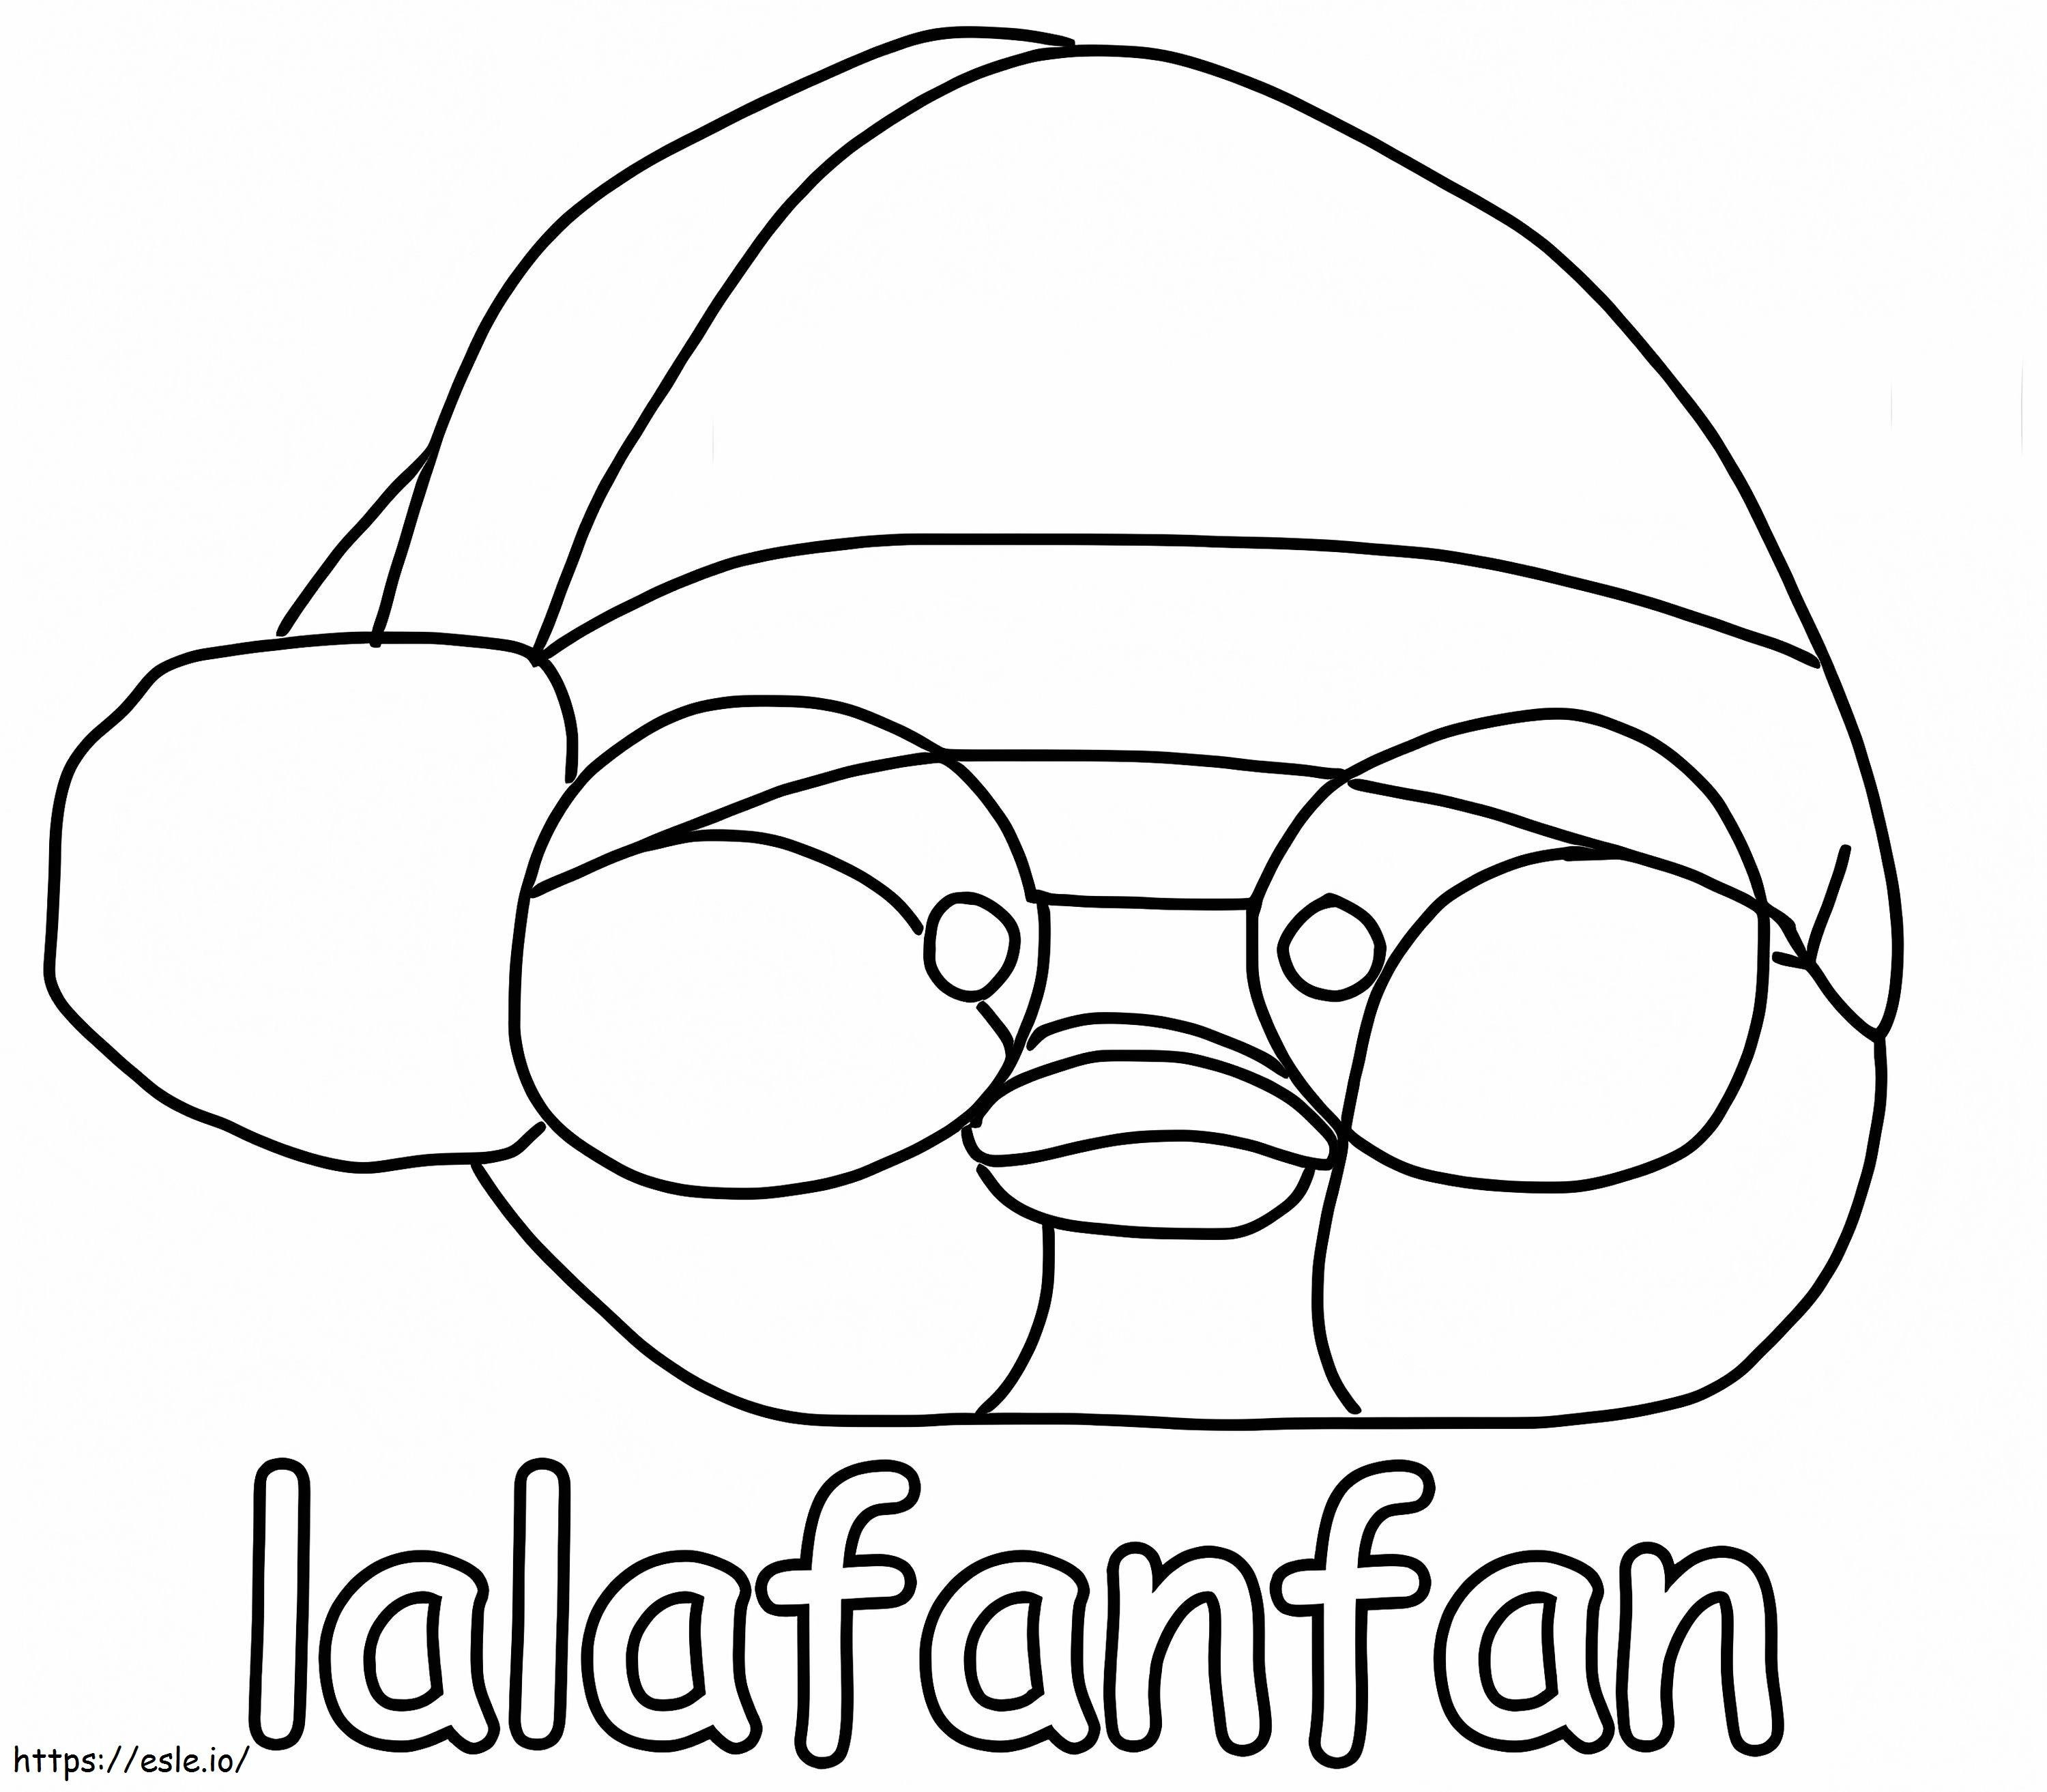 Gratuito Lalafanfan para colorir